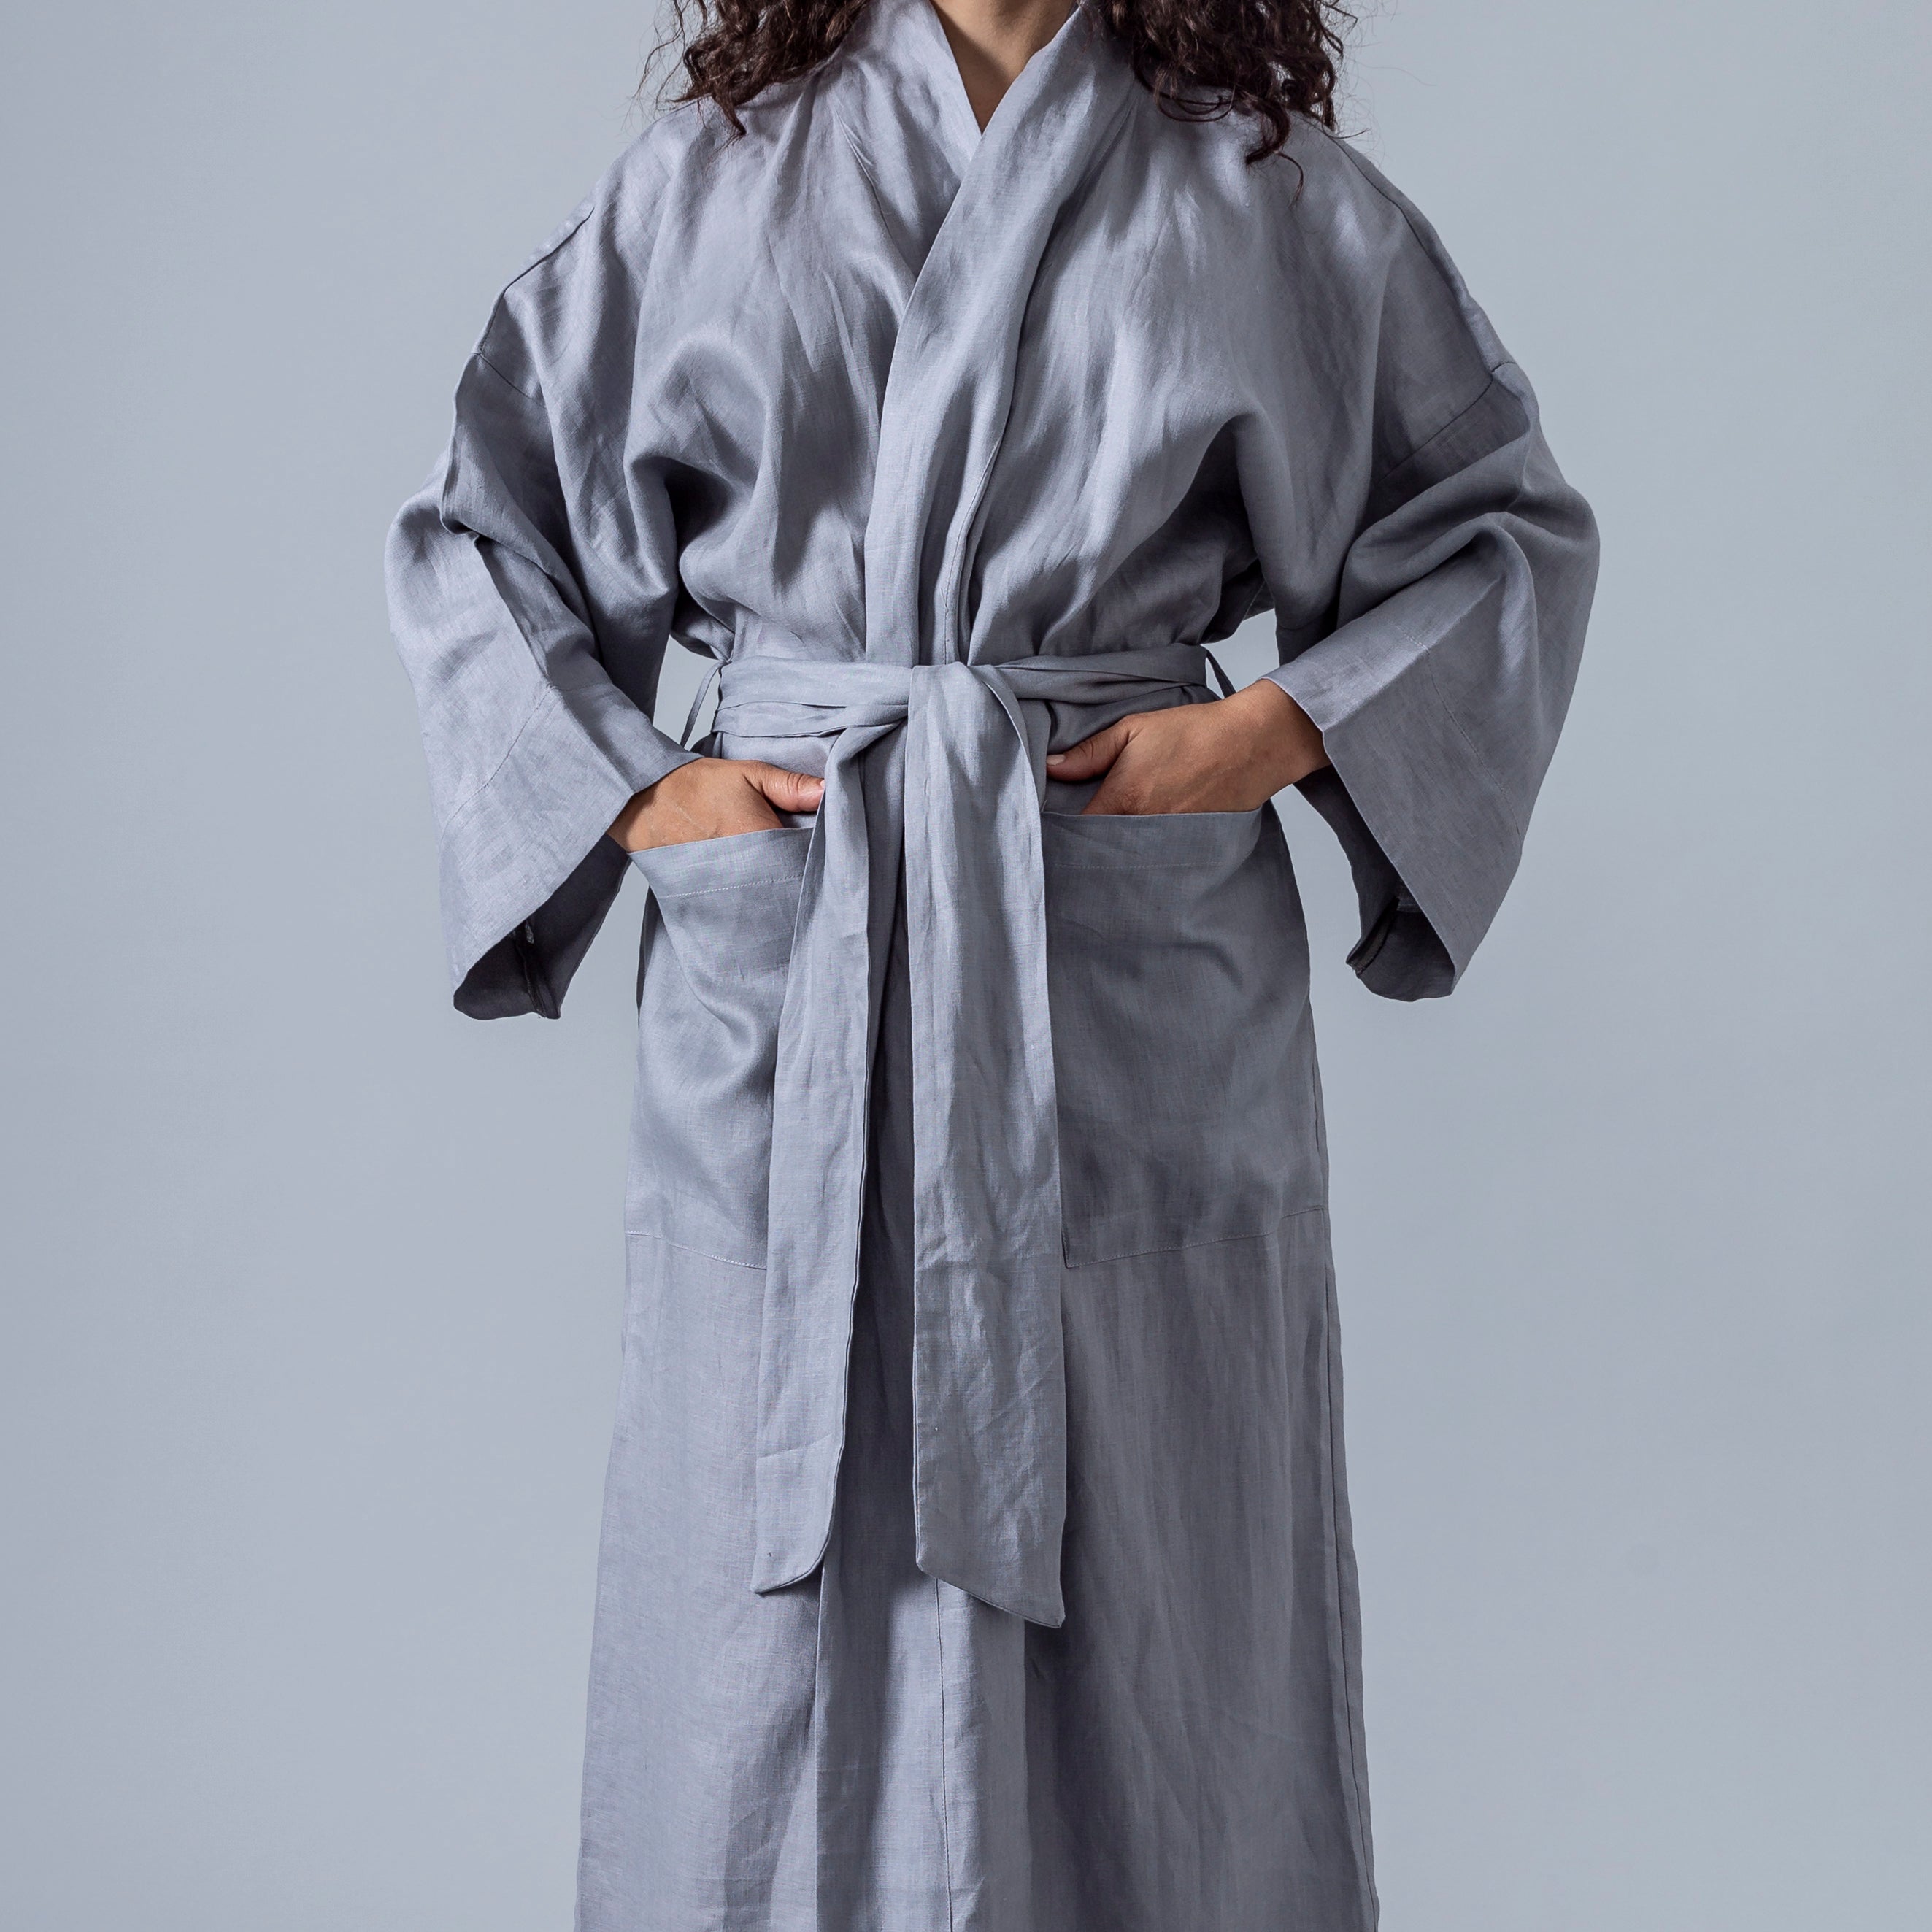 SIQITECHNO Men Kimono Robe Cotton Yukata Spa Sauna Bathrobe Sleepwear  Japanese Kimono for Women Loungewear Nightgown Dressing Gown at Amazon  Men's Clothing store